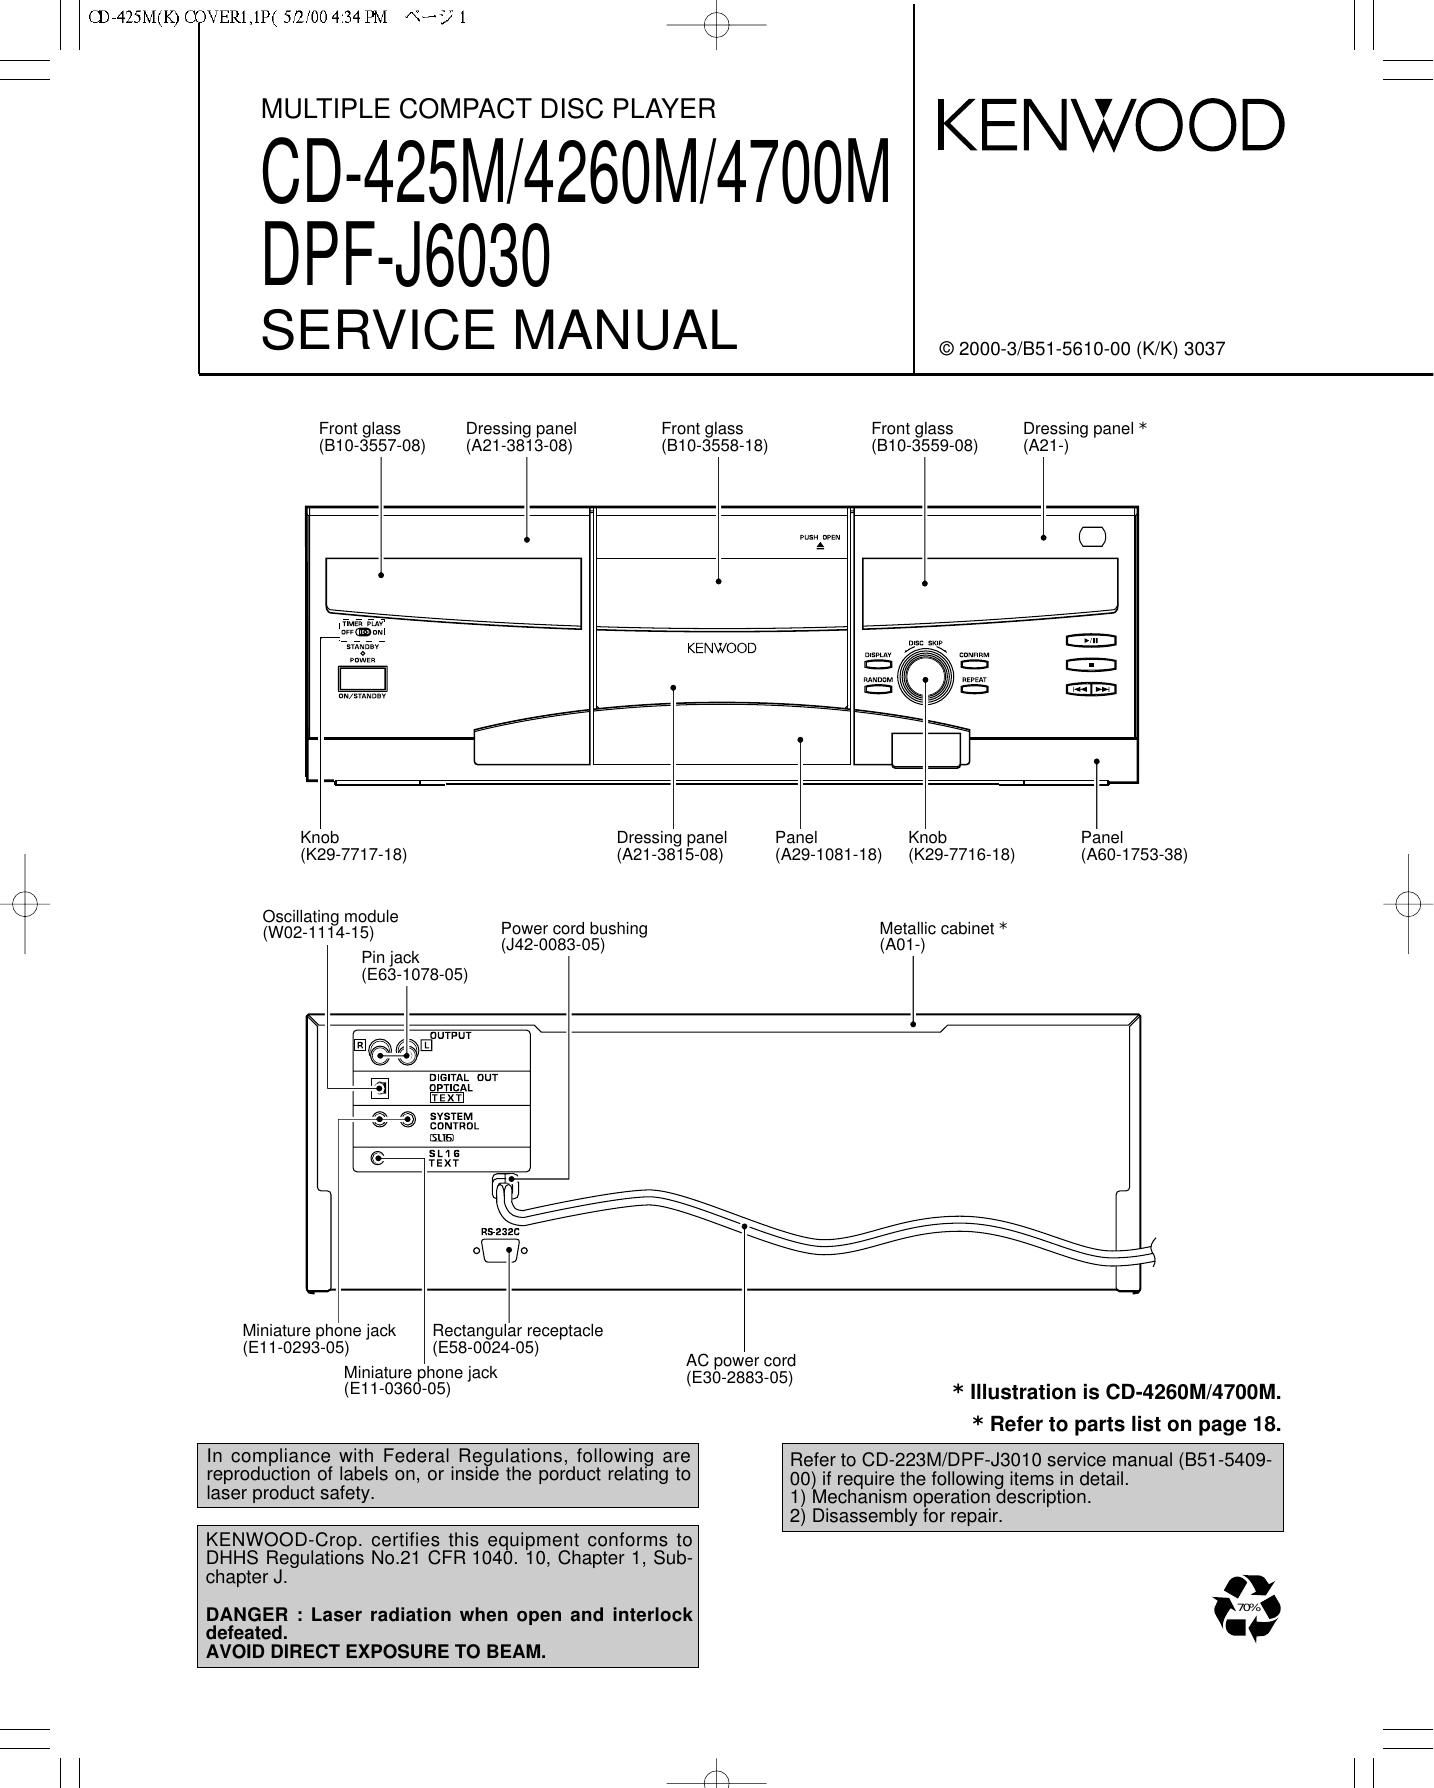 Kenwood CD 425 M Service Manual